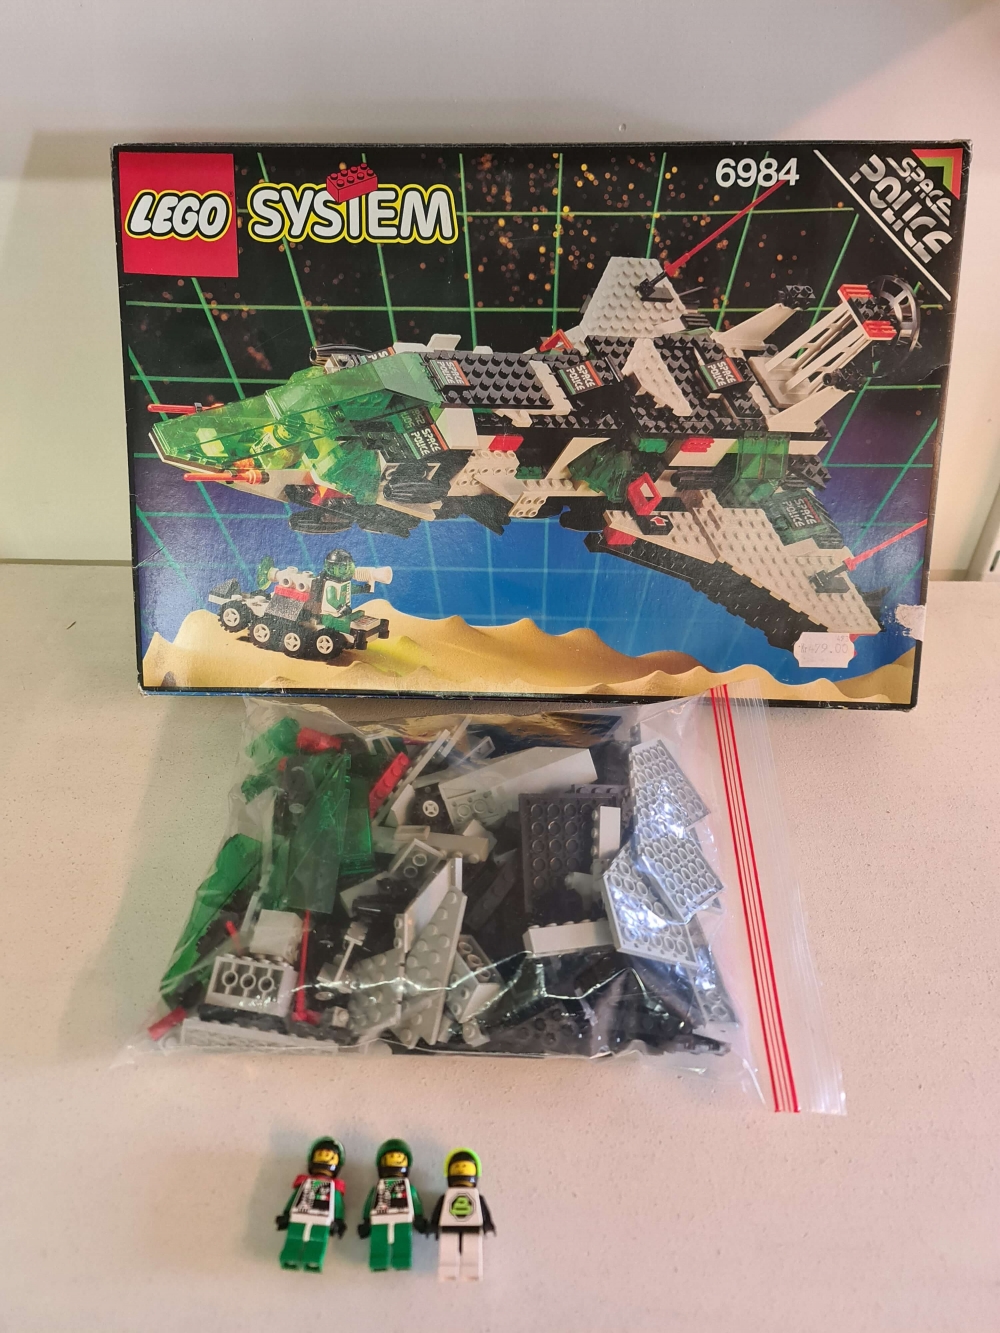 Sett 6984 fra Lego Space : Space Police II serien
Meget pent sett.
Komplett med eske, uten manual.